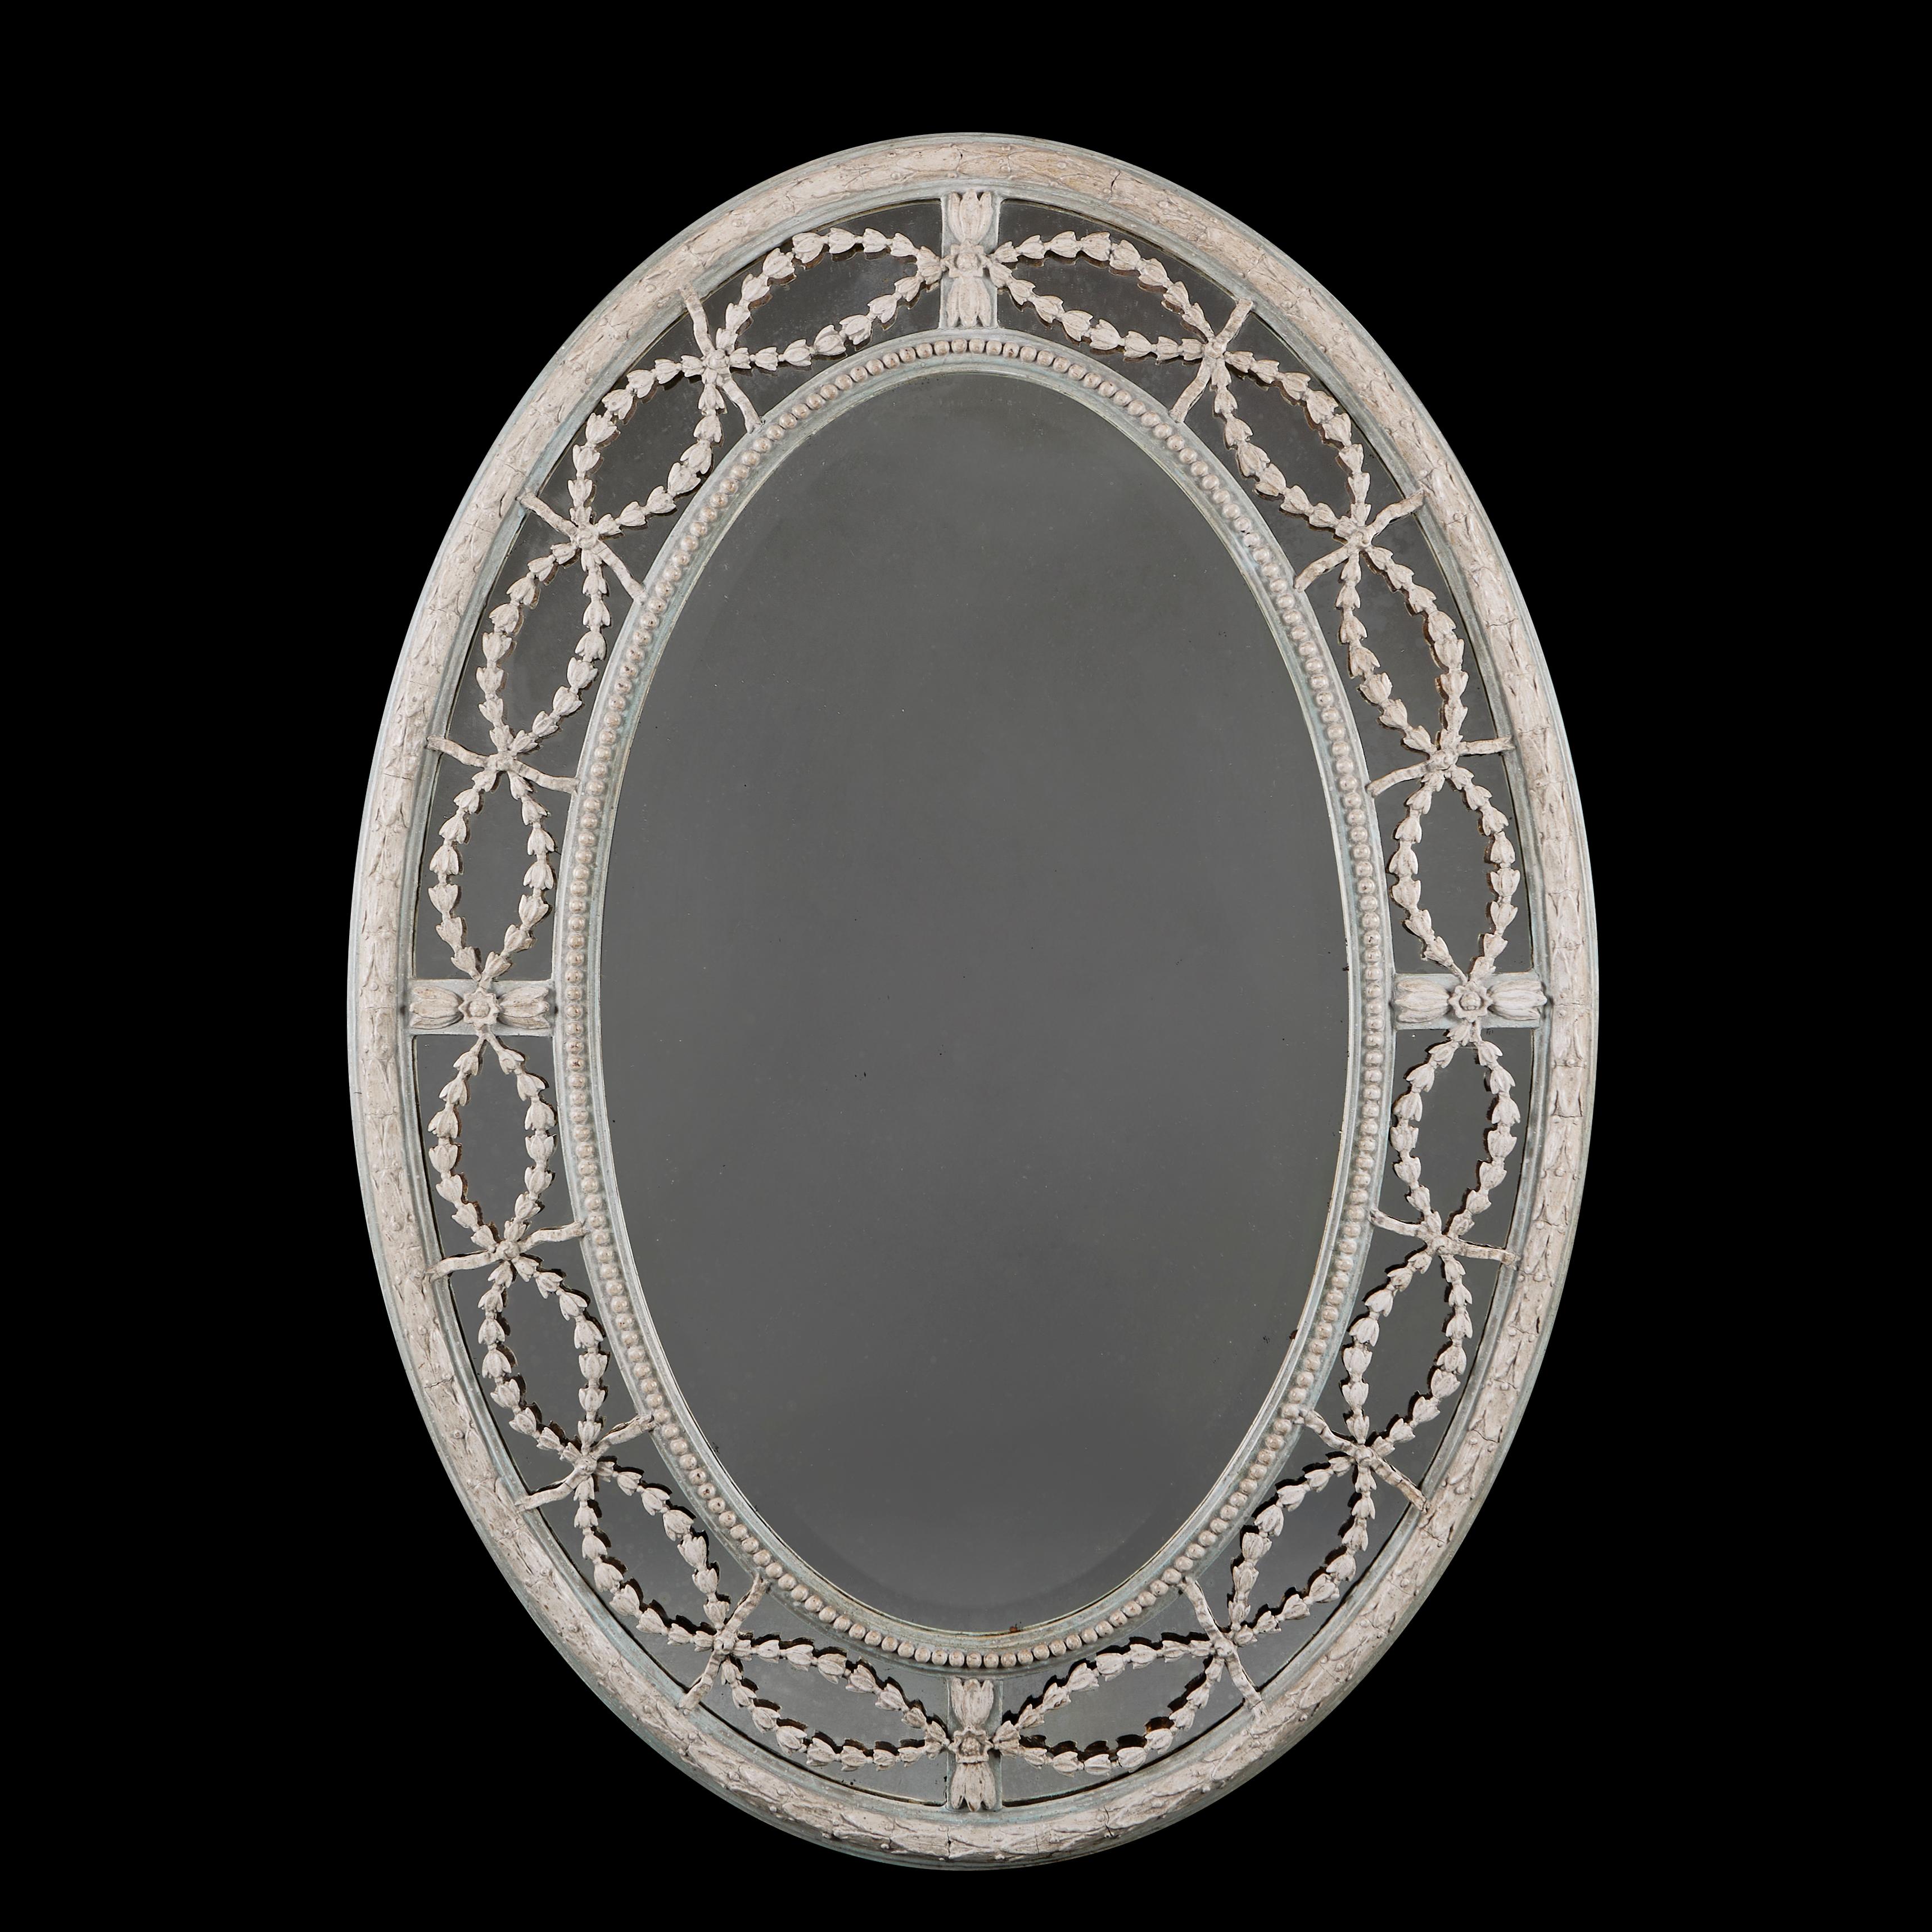 England, um 1880

Ovaler Spiegel aus dem späten neunzehnten Jahrhundert mit blau-weiß bemaltem Rahmen, der Spiegelglasrand ist mit geschnitzten und durchbrochenen Beuteln und Bögen verziert. Der Spiegel kann sowohl im Hoch- als auch im Querformat